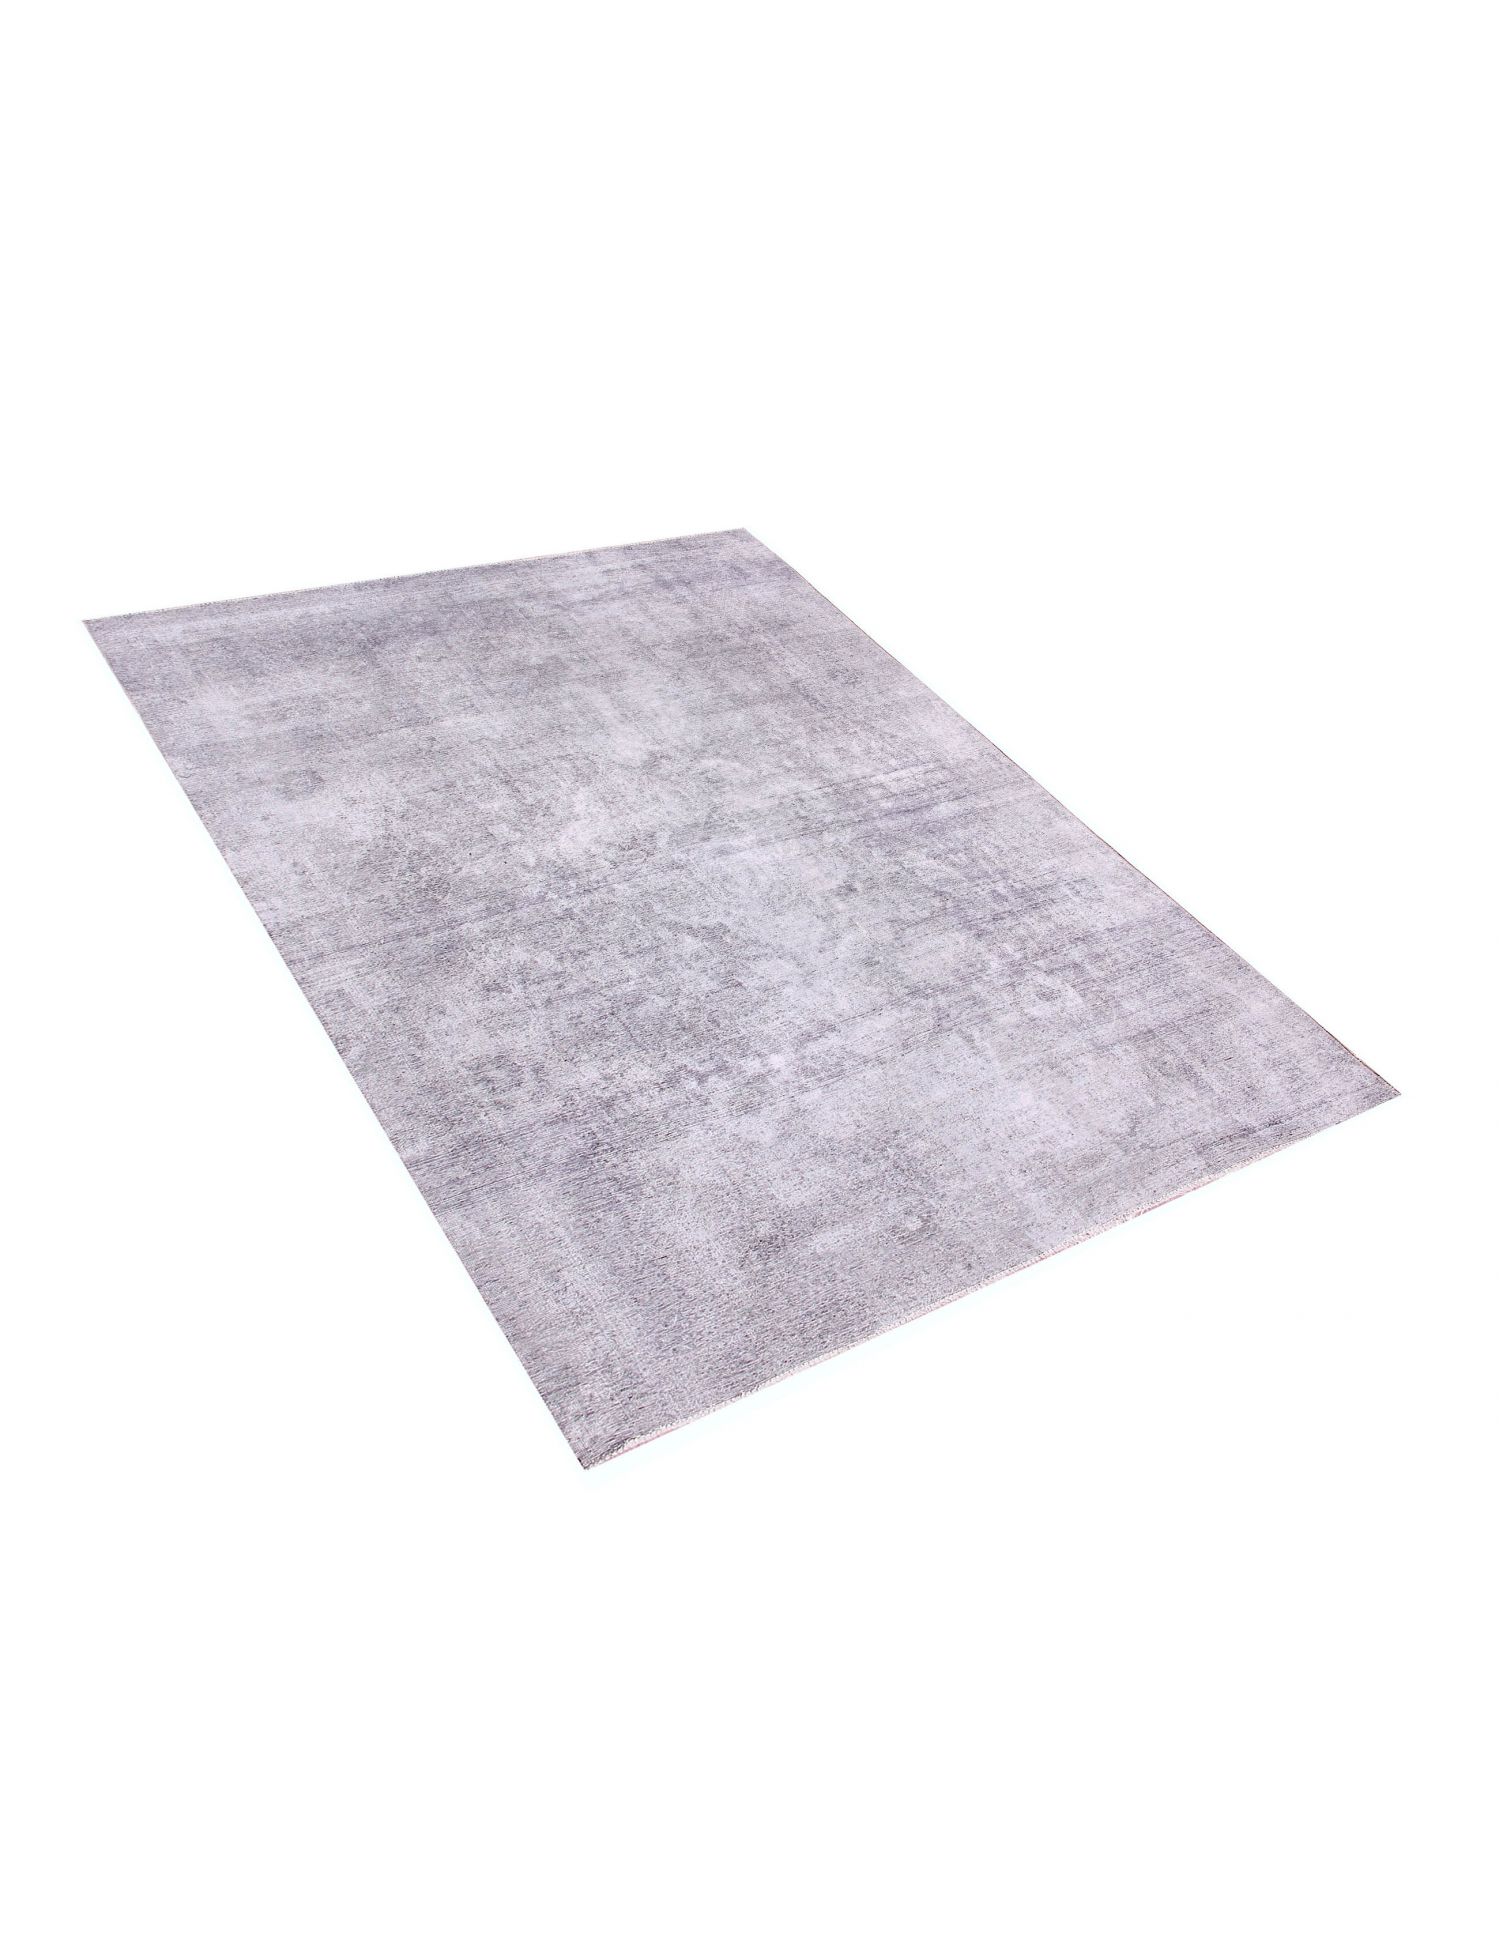 Persischer vintage teppich  grau <br/>315 x 230 cm